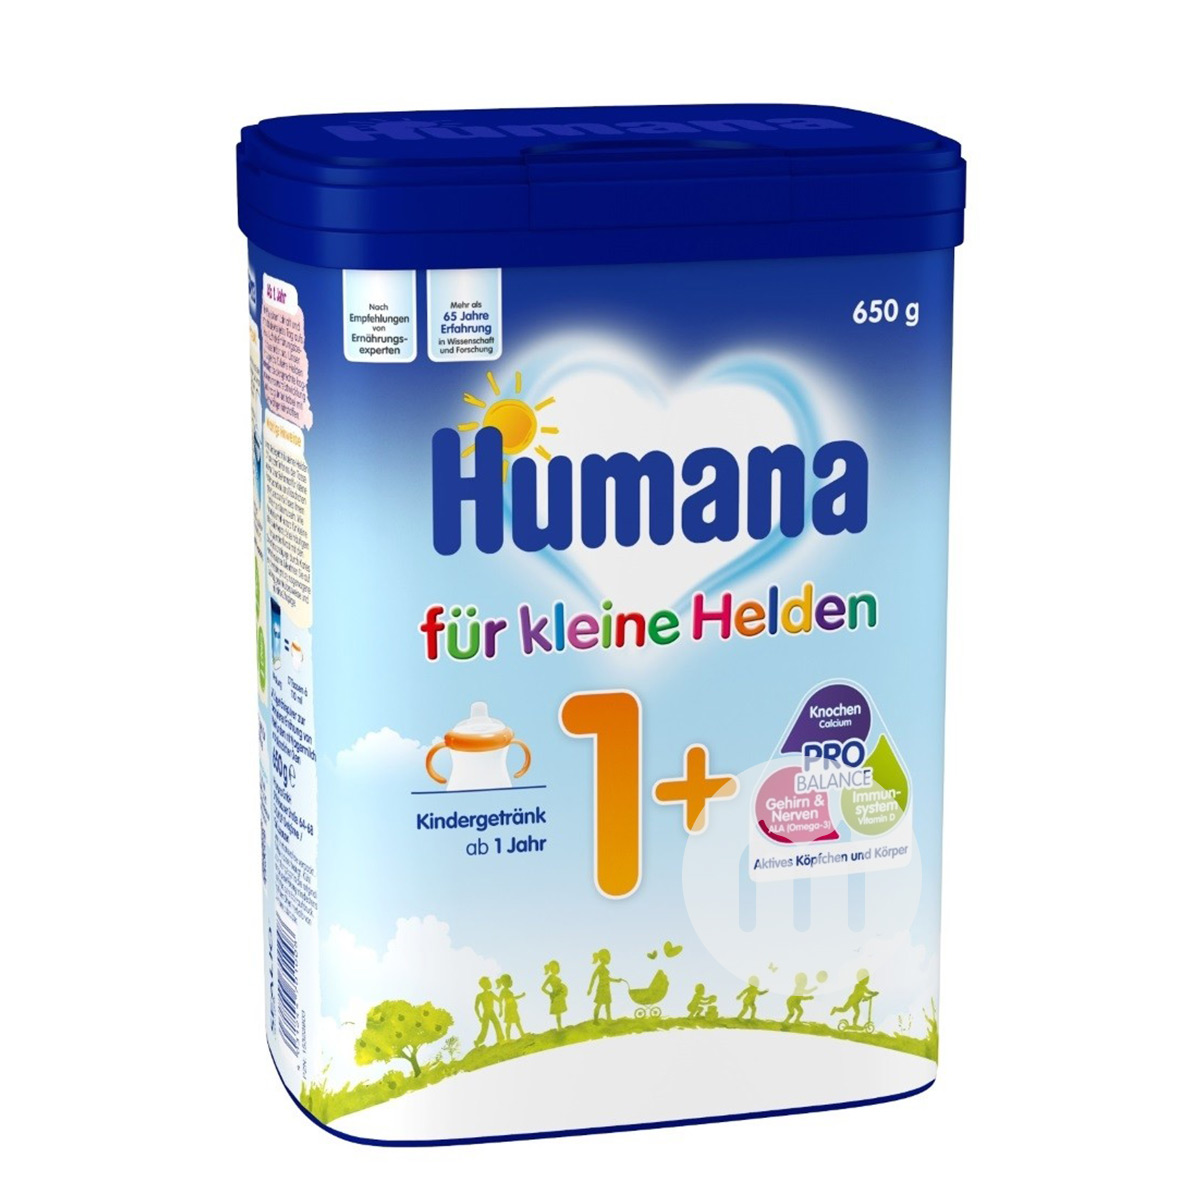 Humanaドイツ瑚玛娜ベビーミルク1+段650 g*4箱